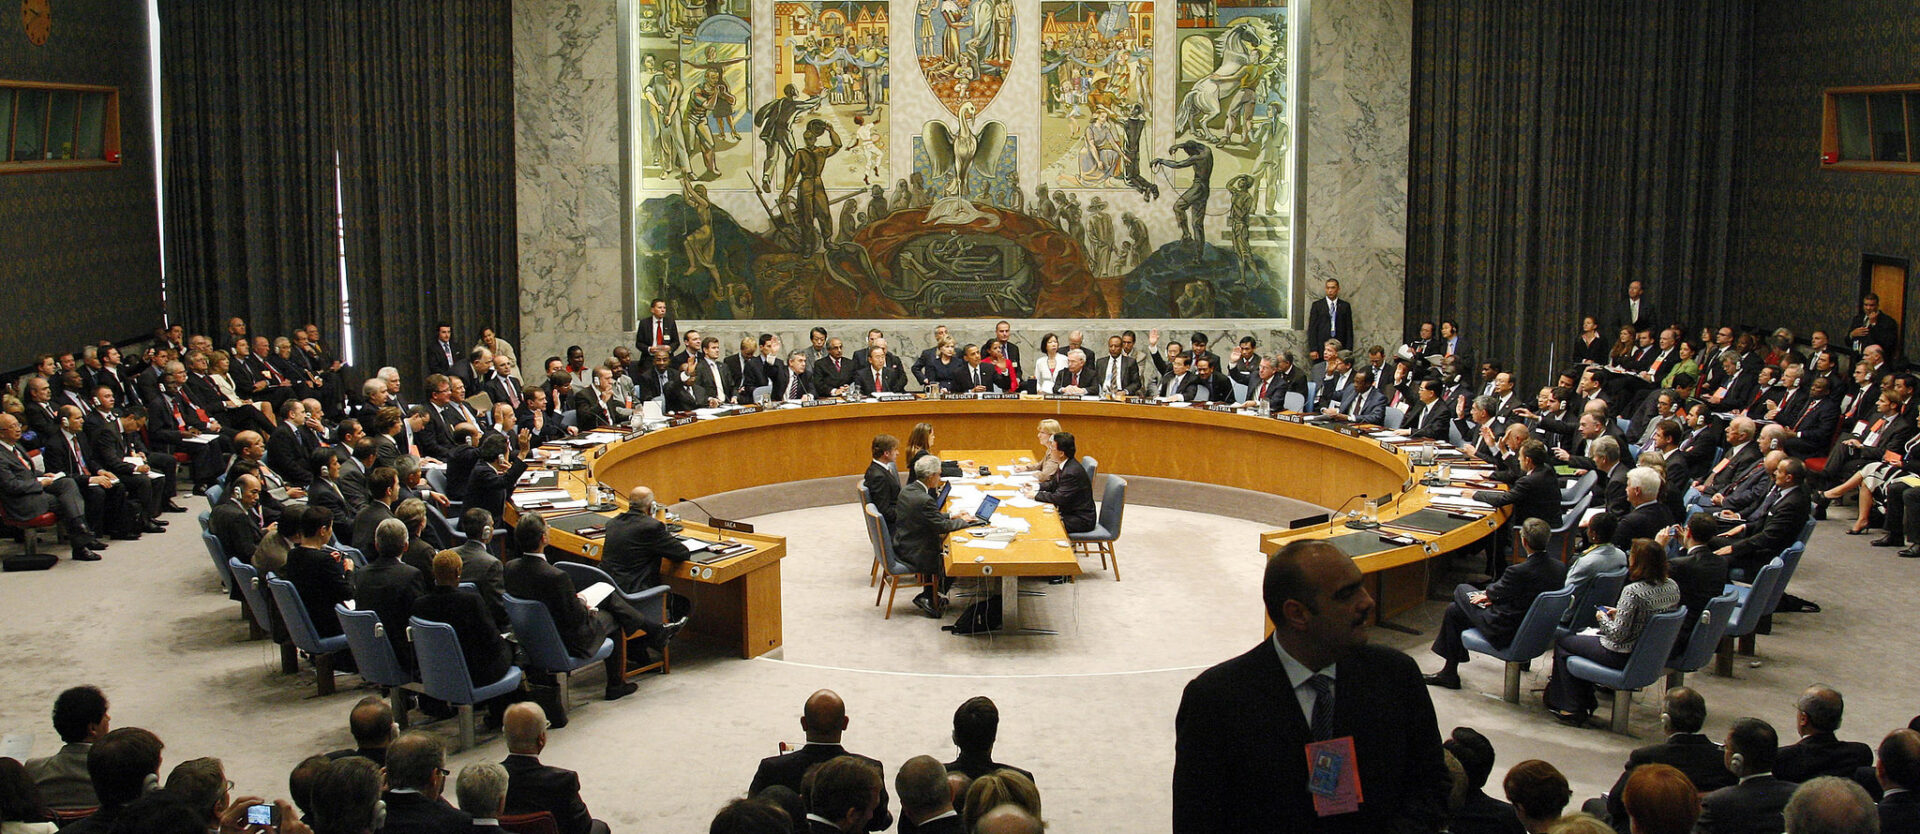 Le Conseil de sécurité de l'ONU, à New York | © United Nations Photos/Flickr/CC BY-NC-ND 2.0